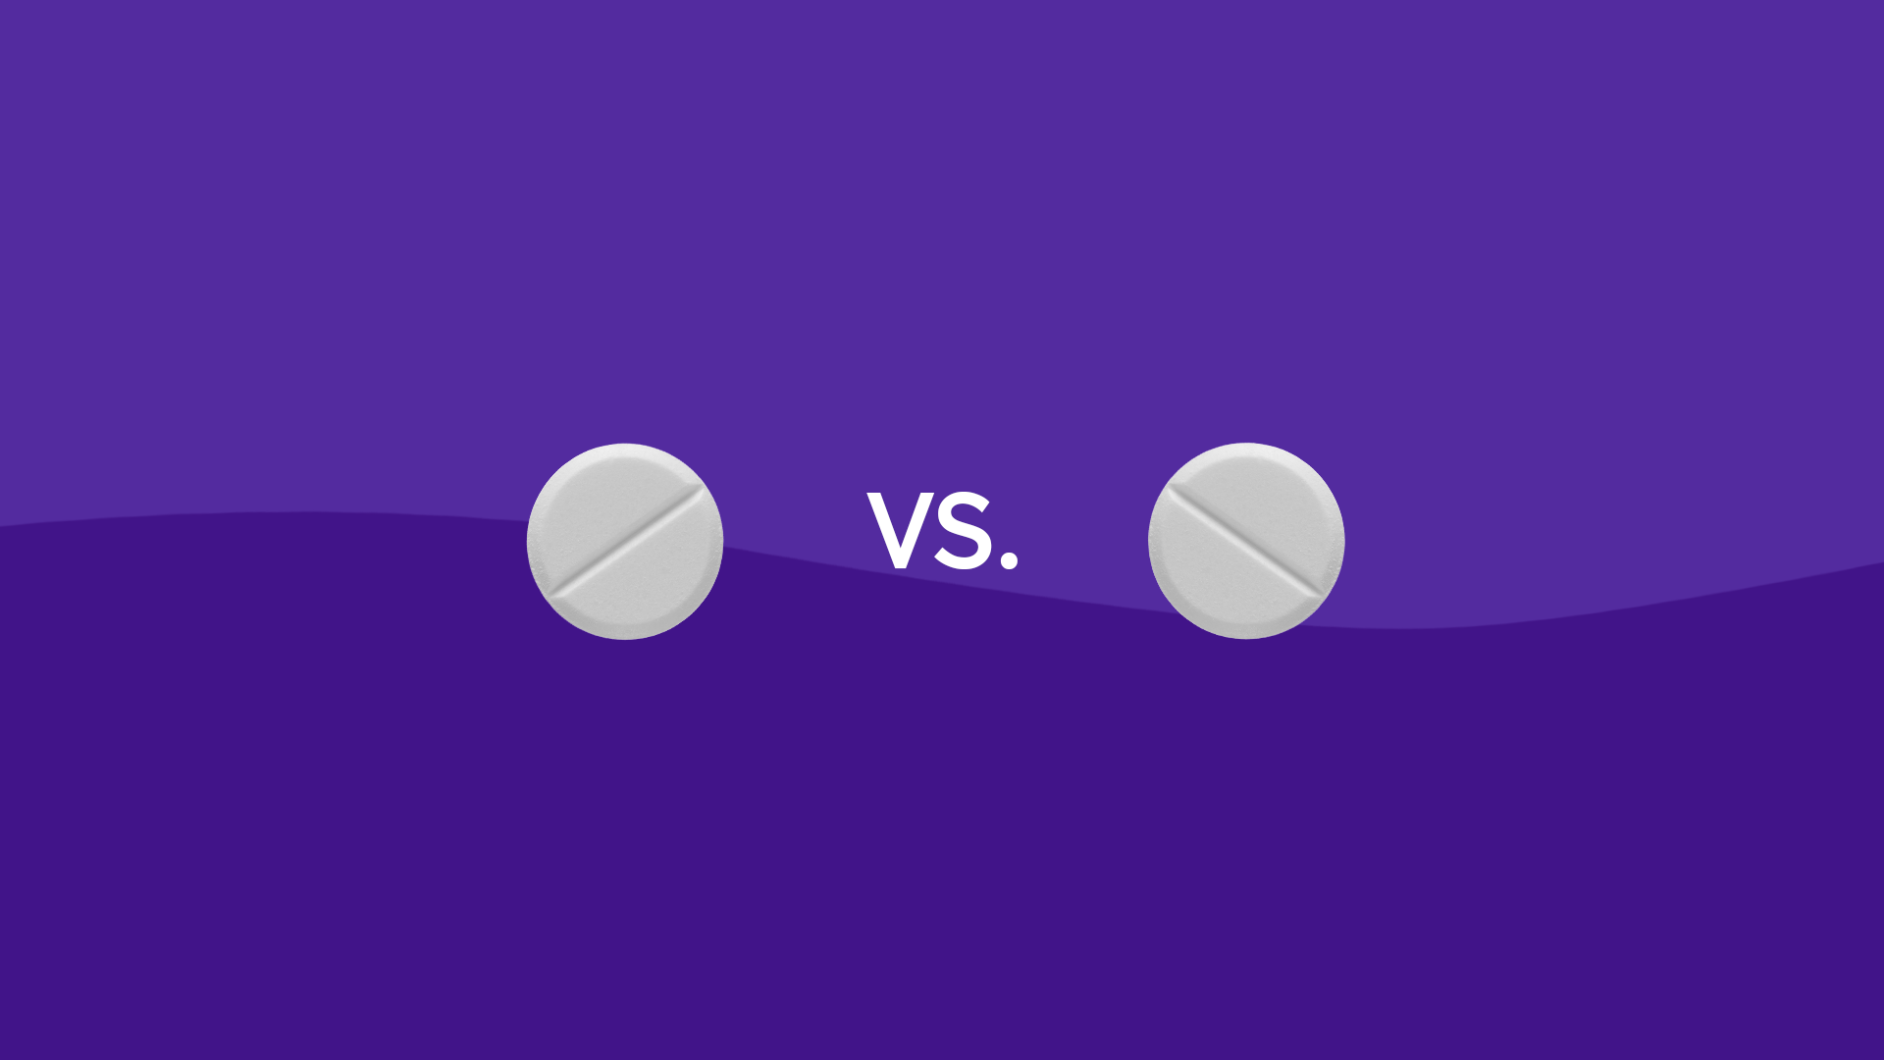 Klonopin vs. Valium drug comparison